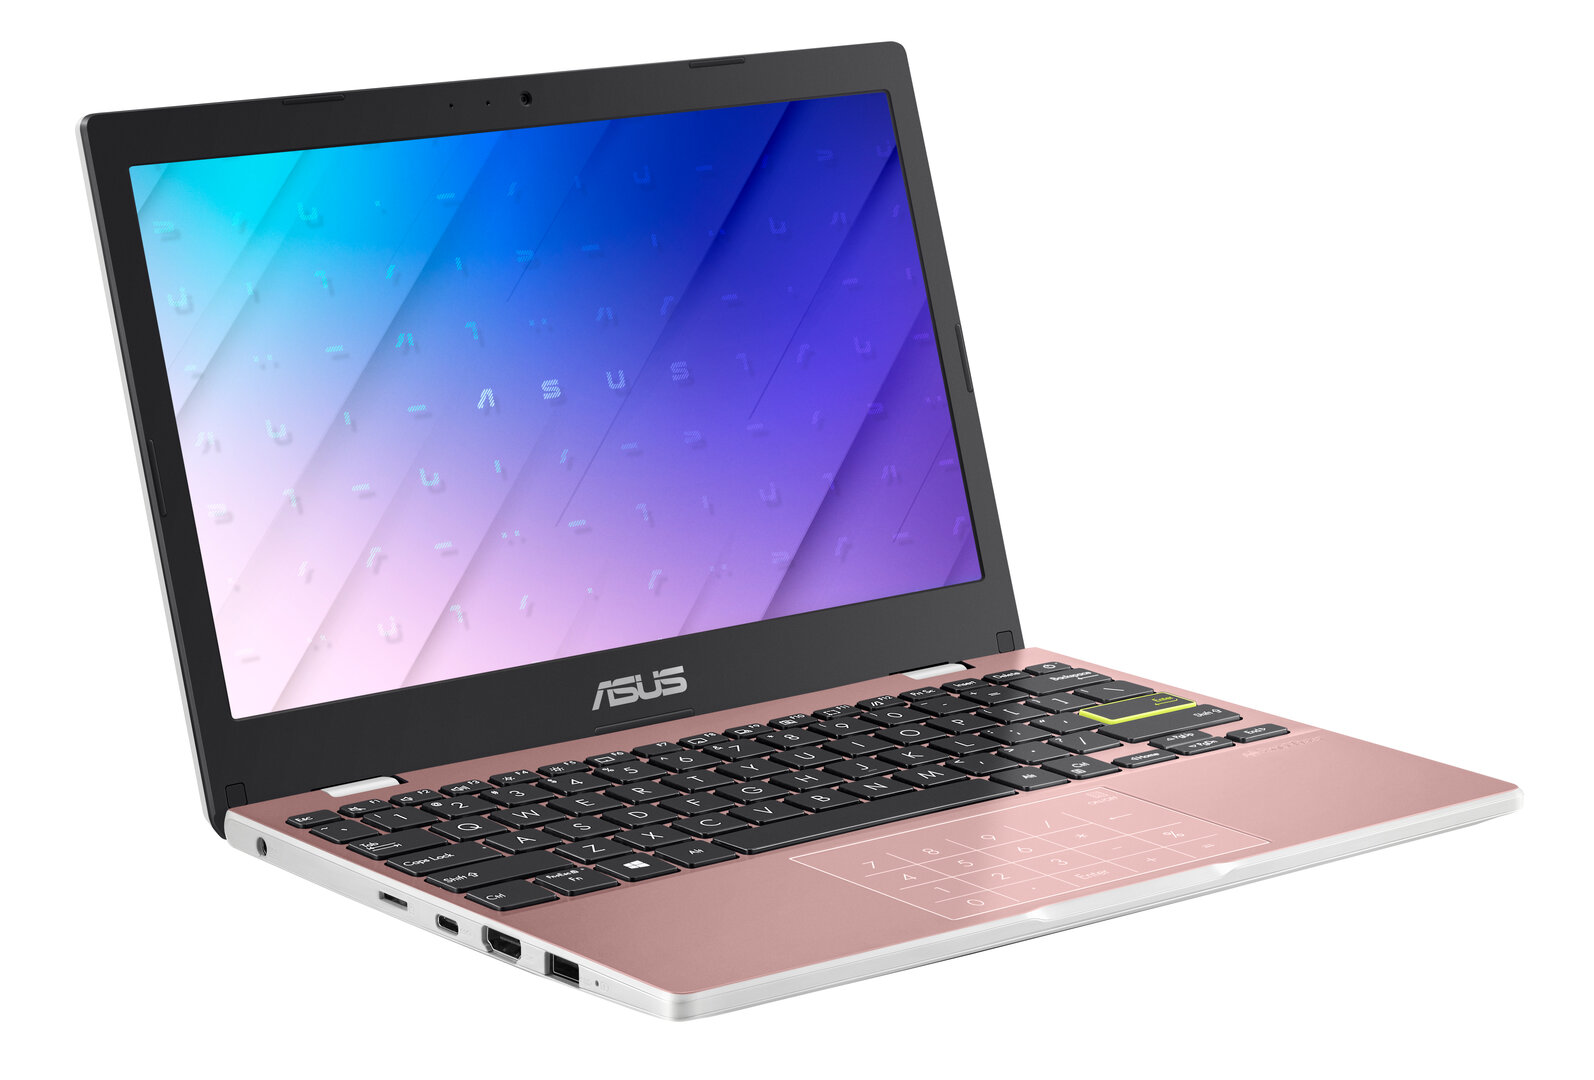 Asus VivoBook 12 (L210) – Rose Pink